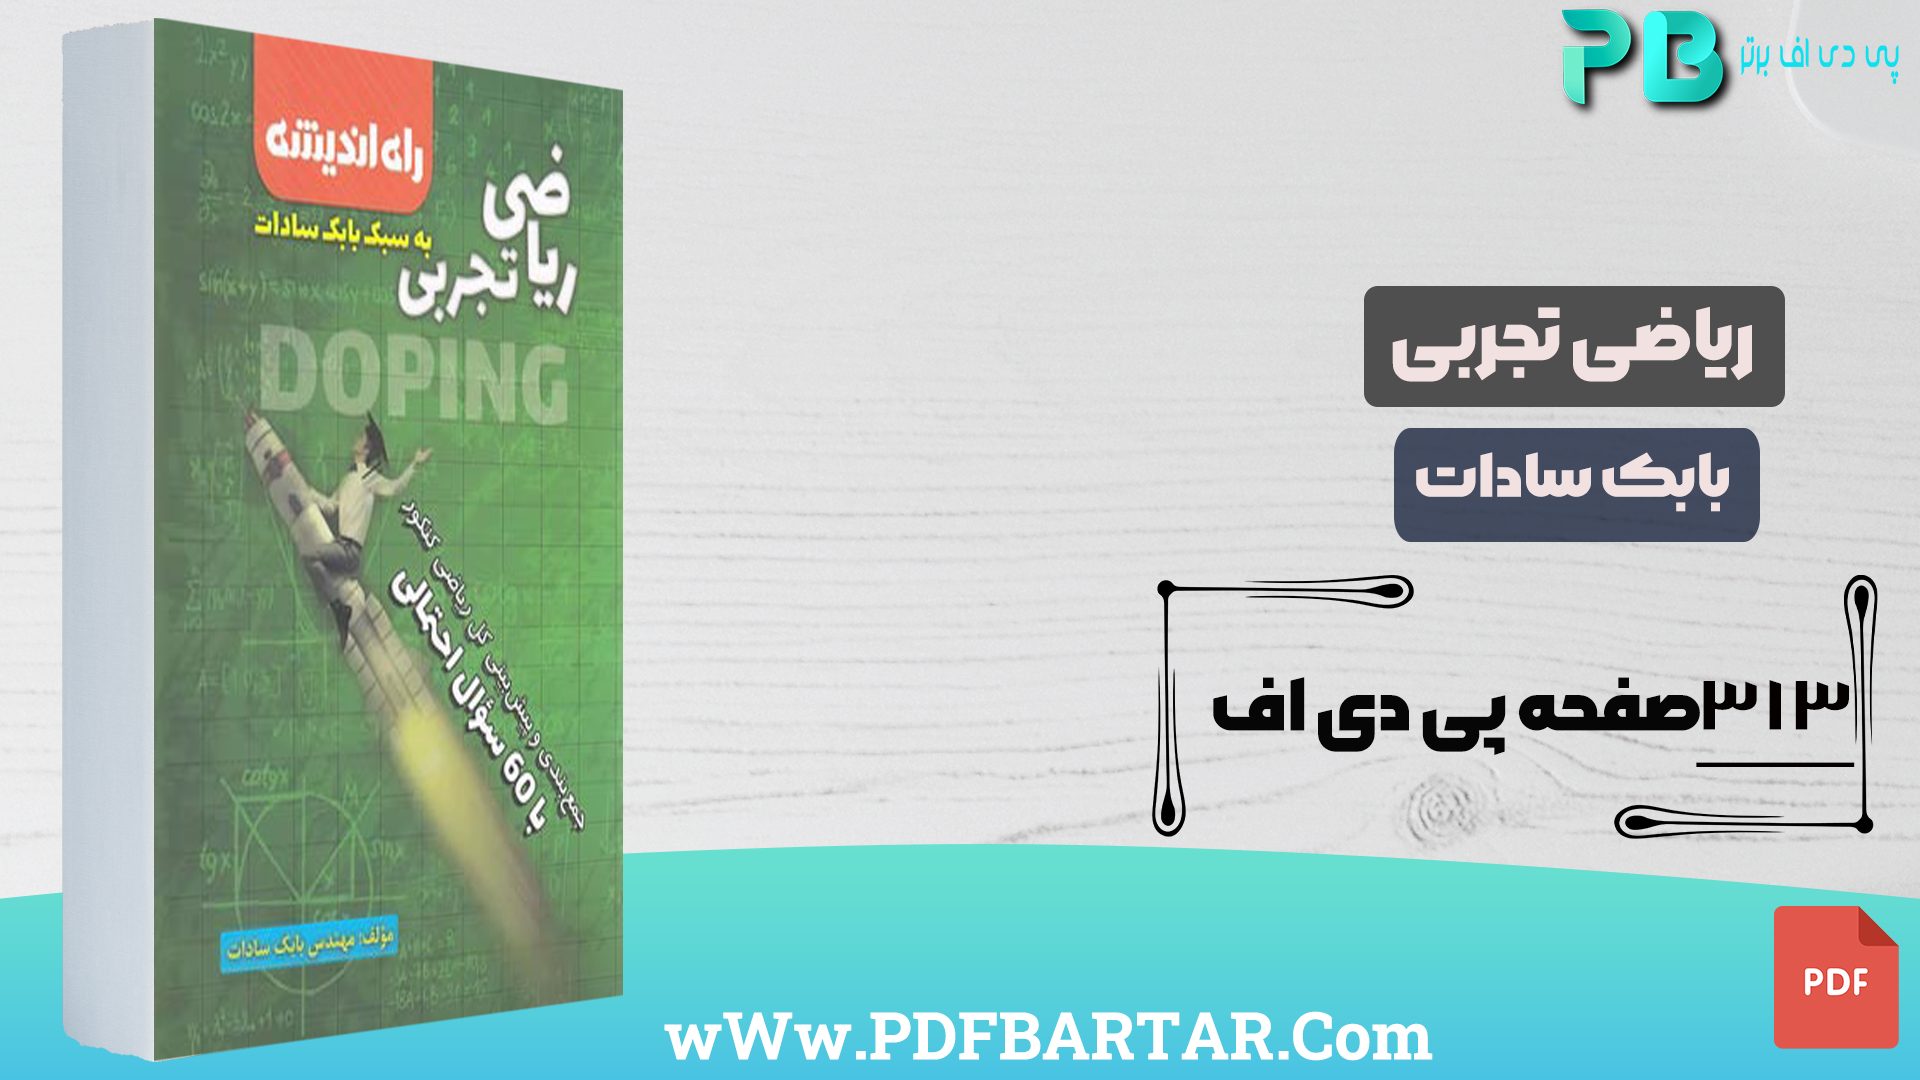 دانلود پی دی اف کتاب ریاضی تجربی بابک سادات PDF- پی دی اف برتر